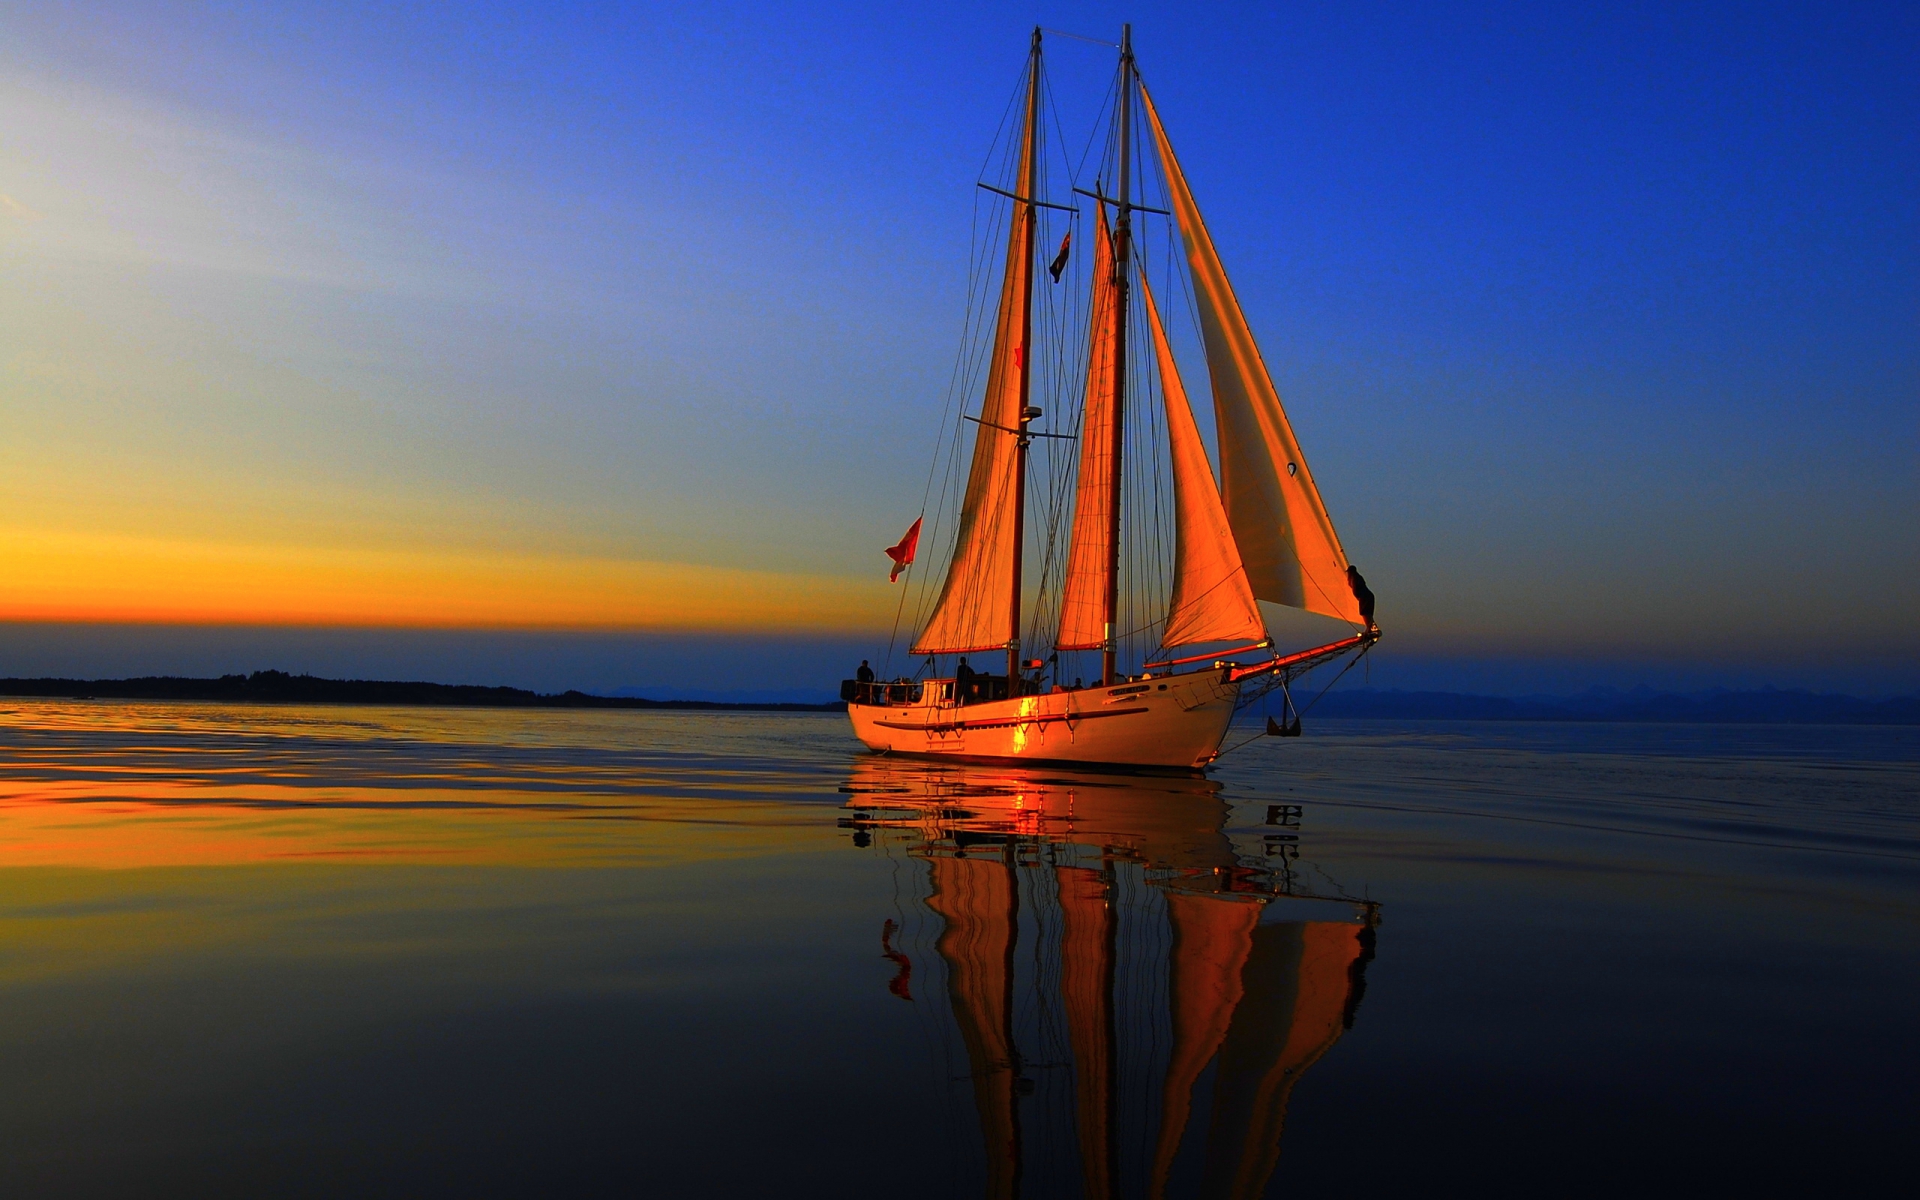 barca wallpaper hd,cielo,calma,barca,veicolo,tramonto